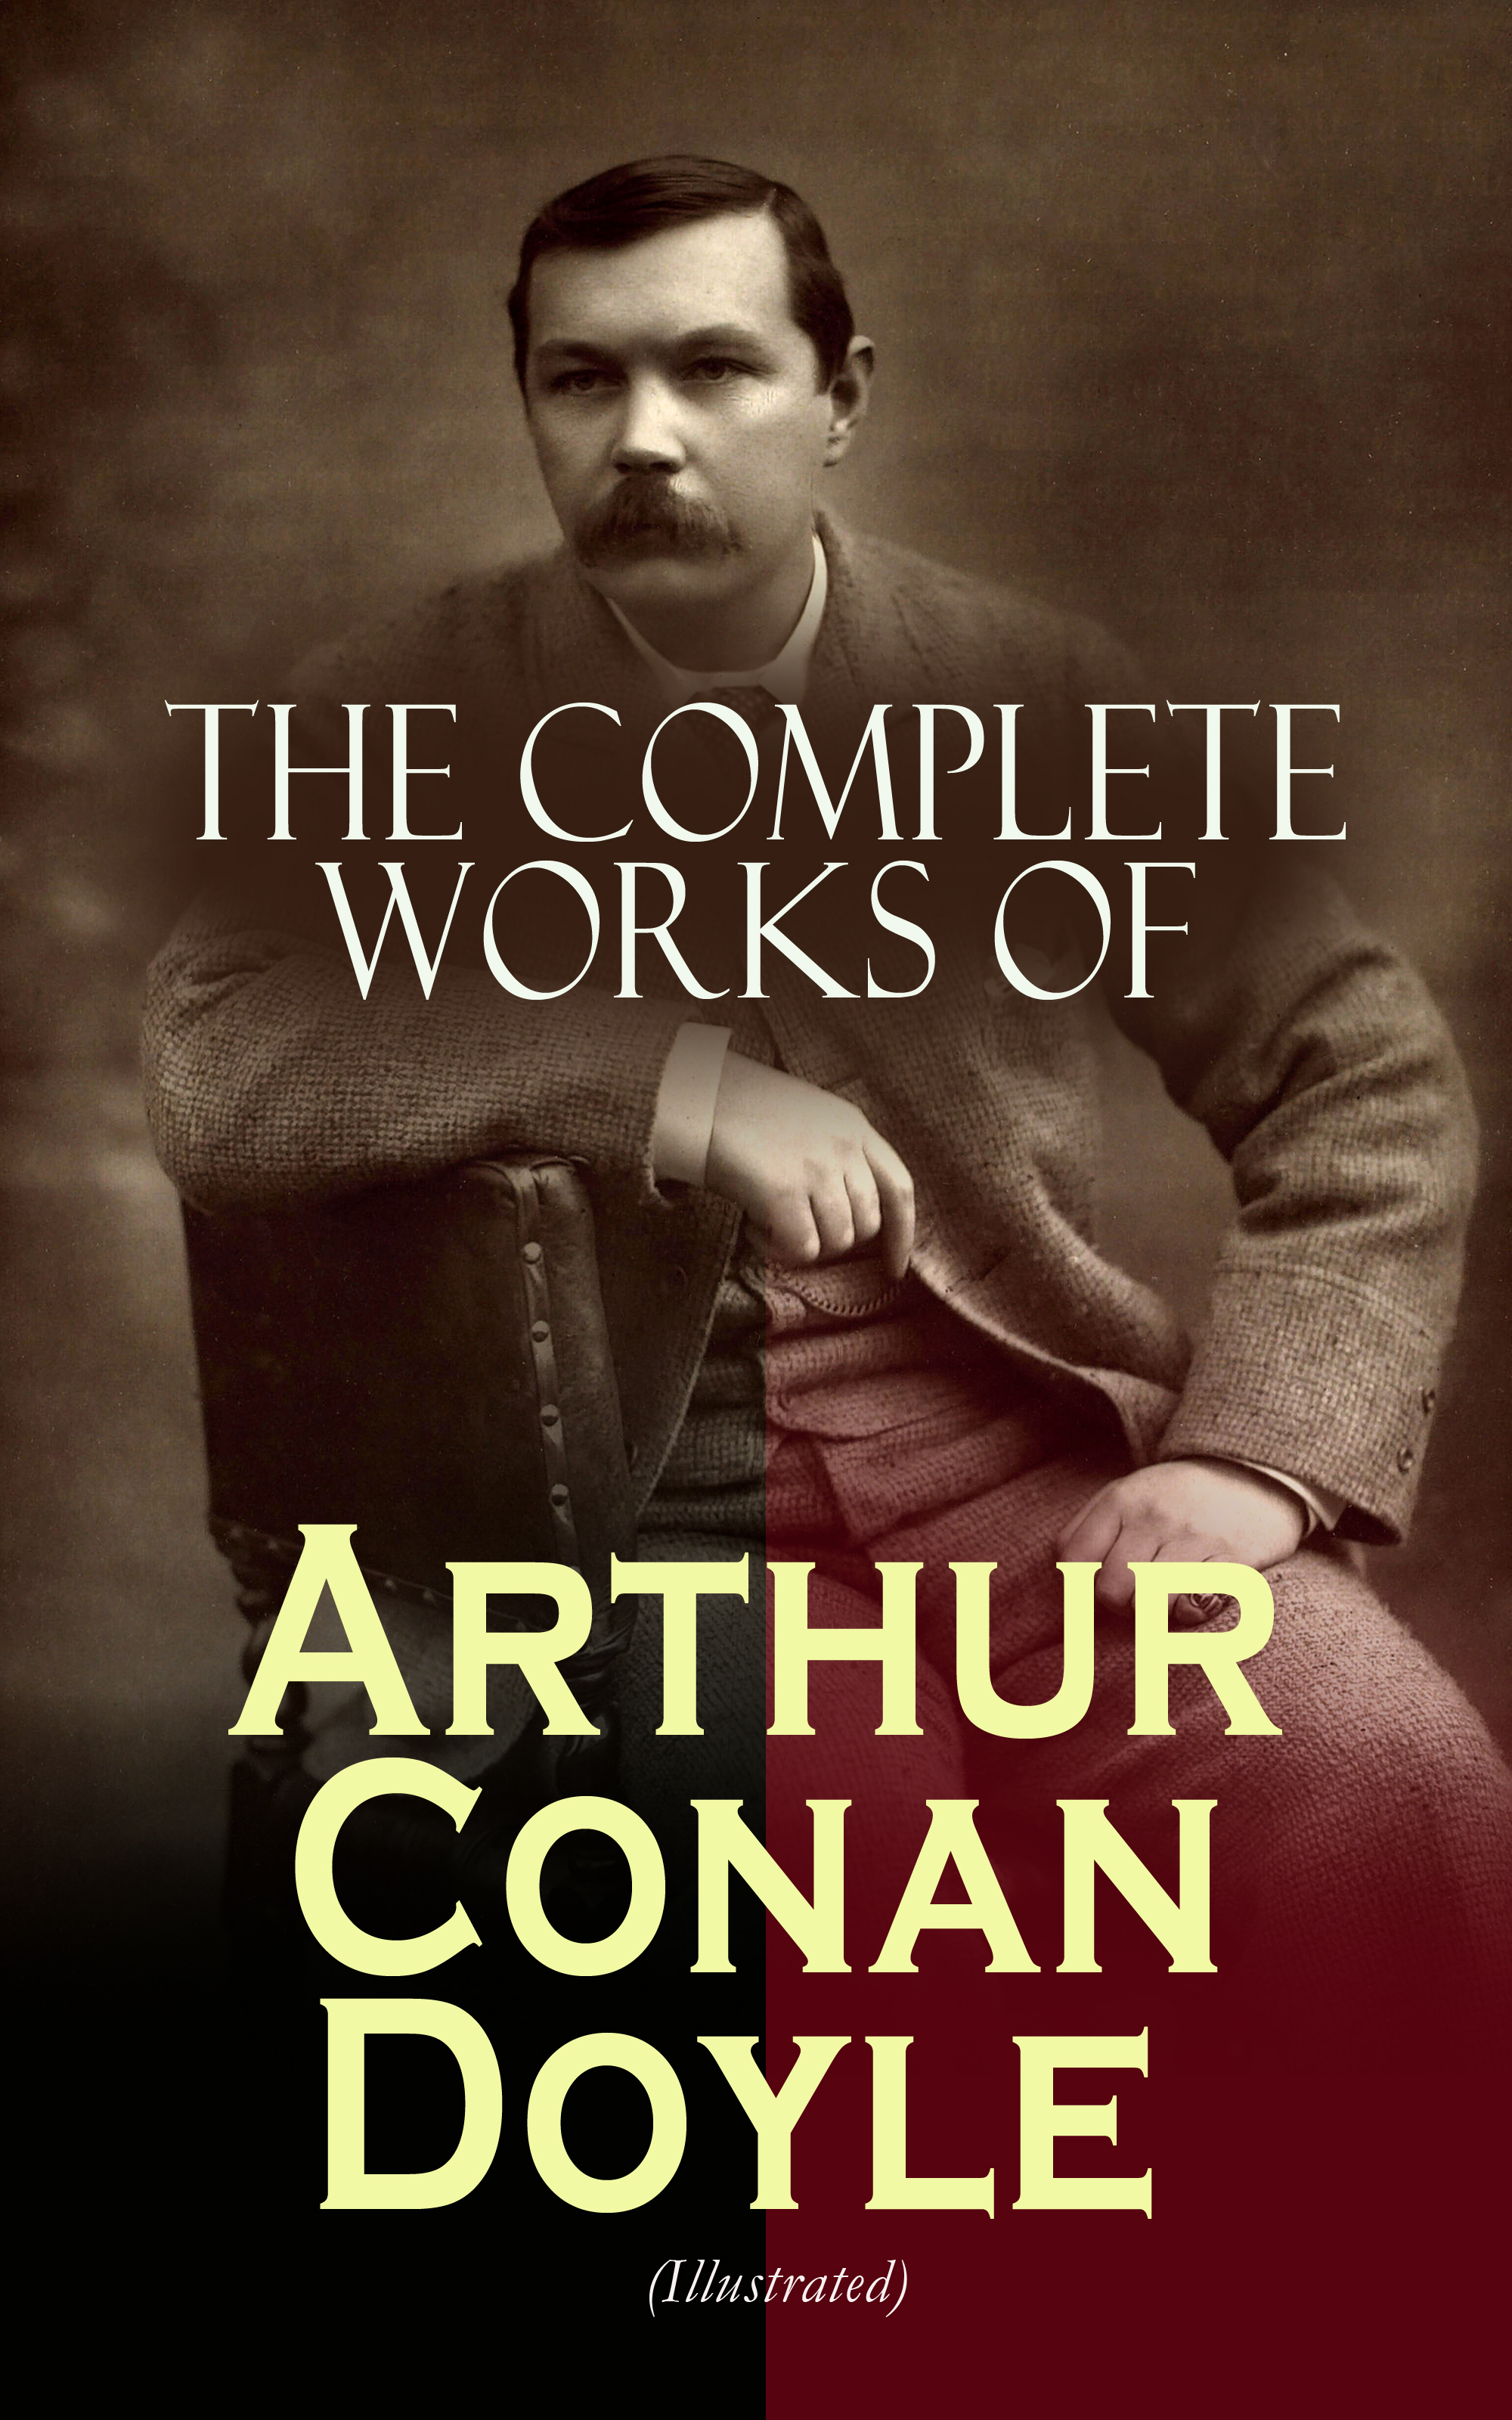 sir arthur conan doyle biography book